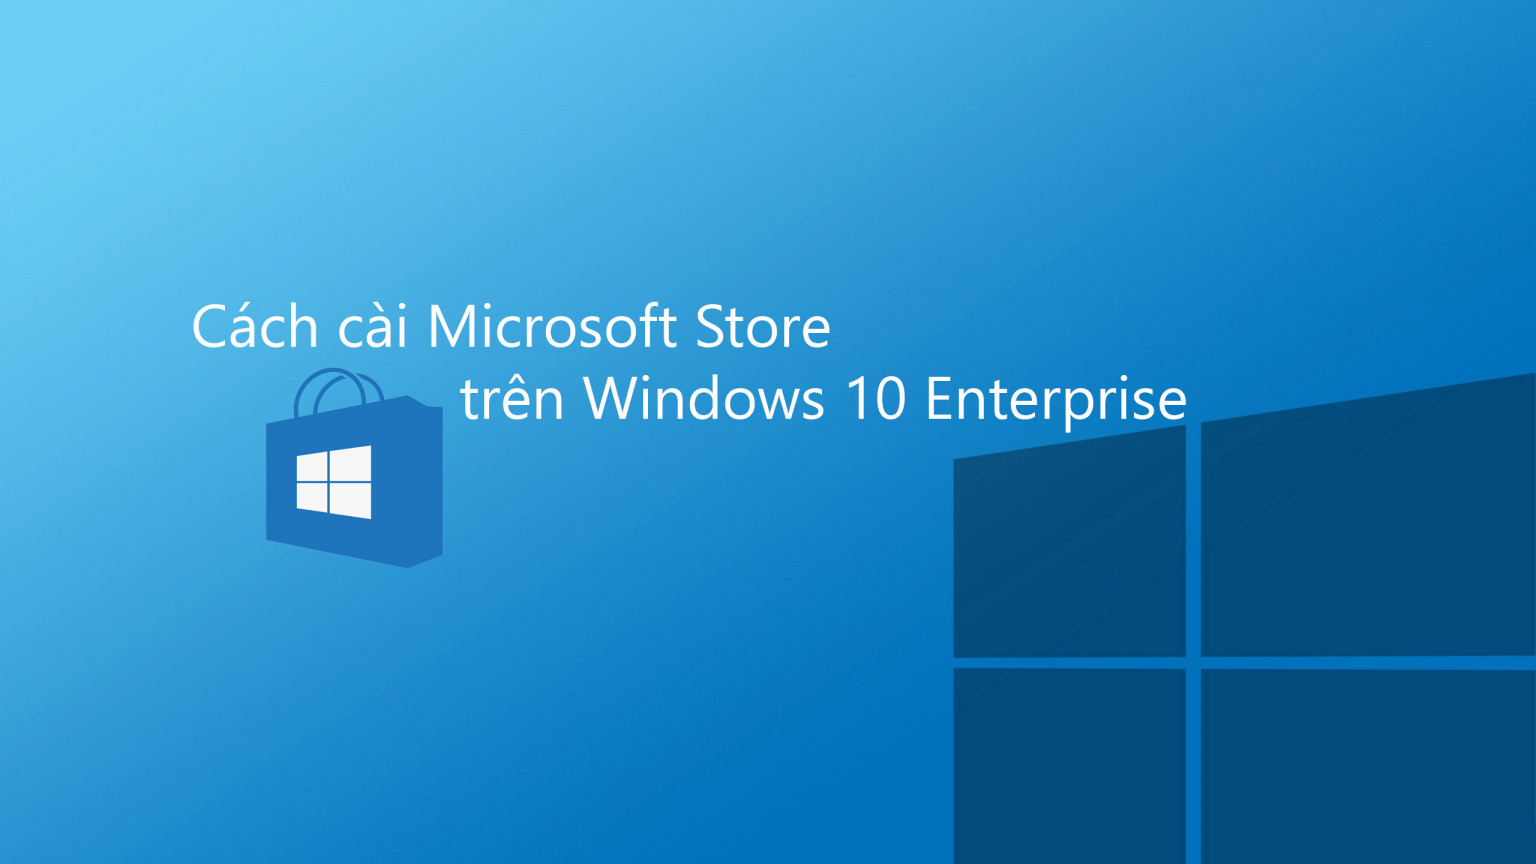 Cách Cài Microsoft Store Cho Windows 10 Enterprise Mới Nhất